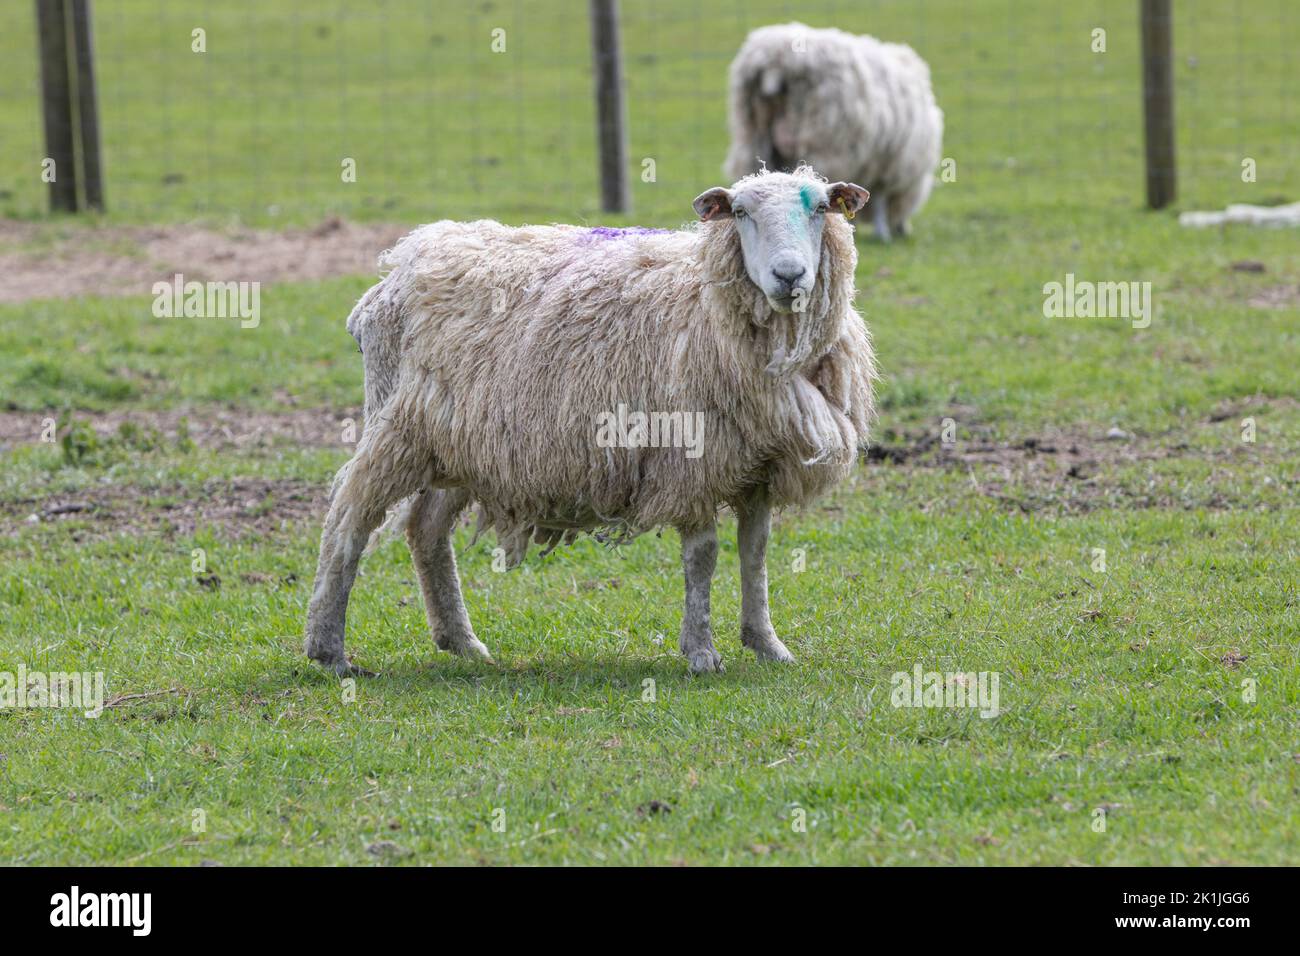 Dos ovejas pastando en un campo de hierba Foto de stock